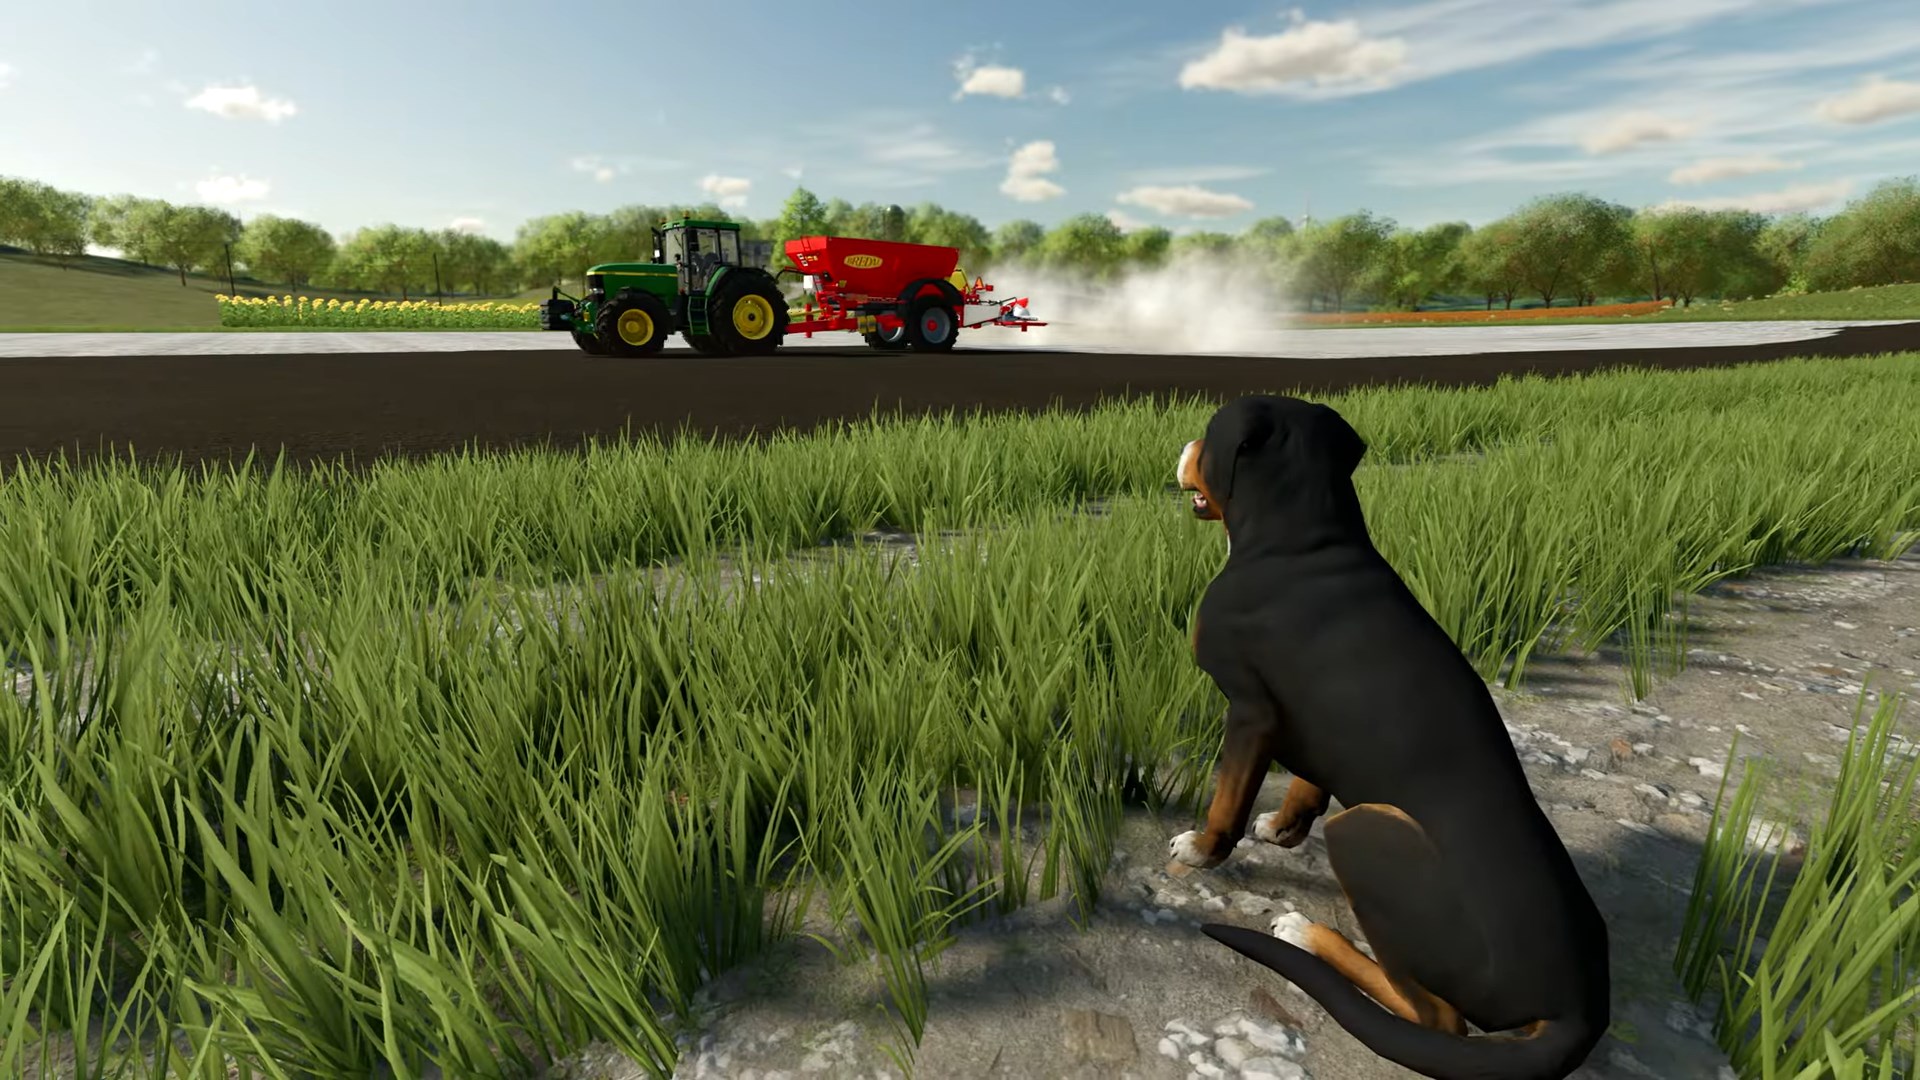 Landwirtschafts Simulator 22 Platinum Edition - PC Games